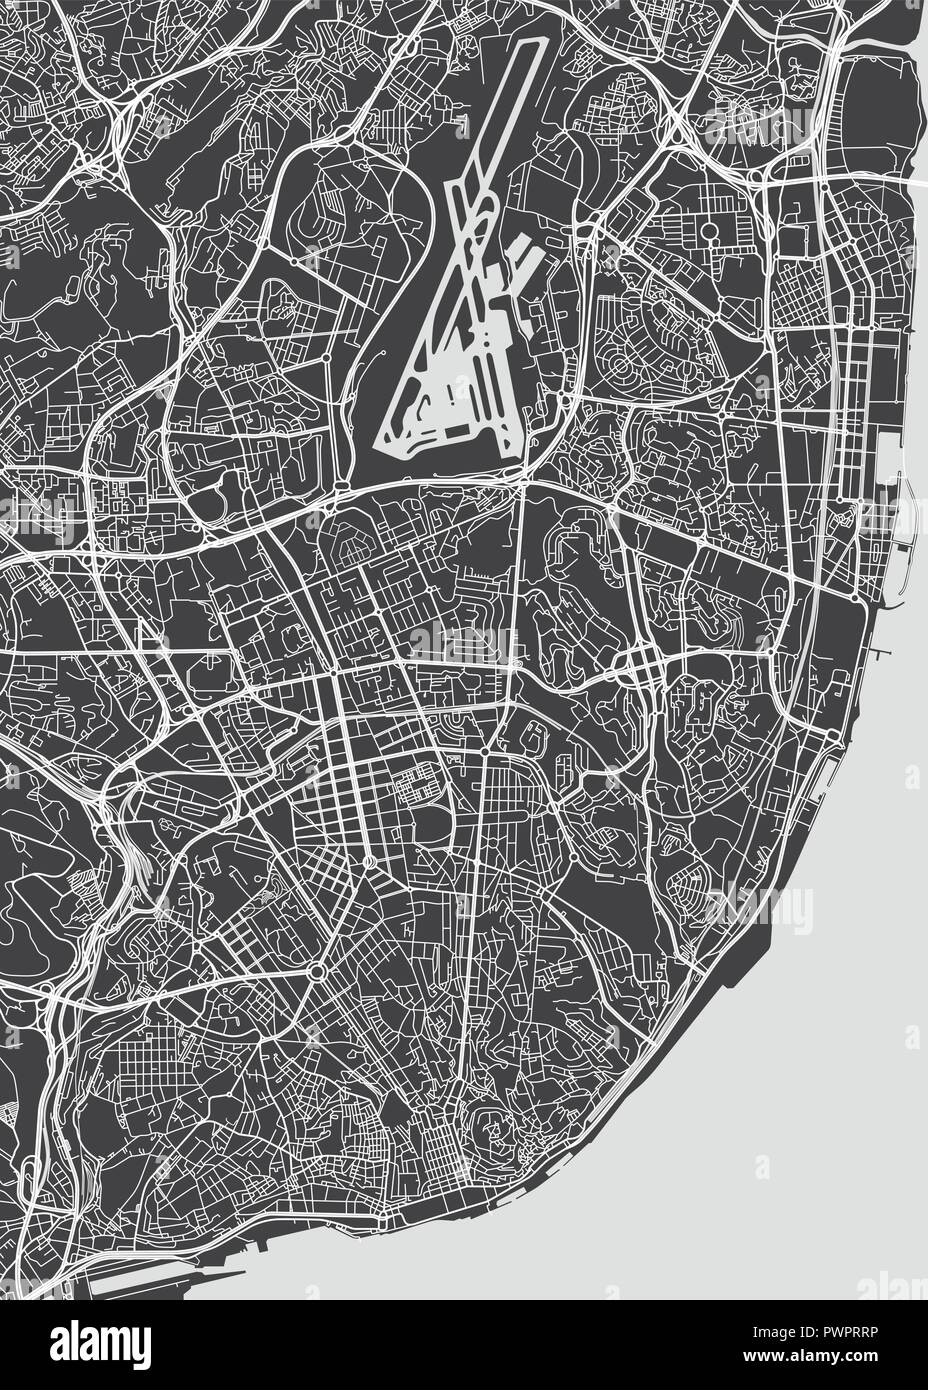 La ciudad de Lisboa, el plan detallado plan detallado mapa de vectores de la ciudad, ríos y calles Ilustración del Vector